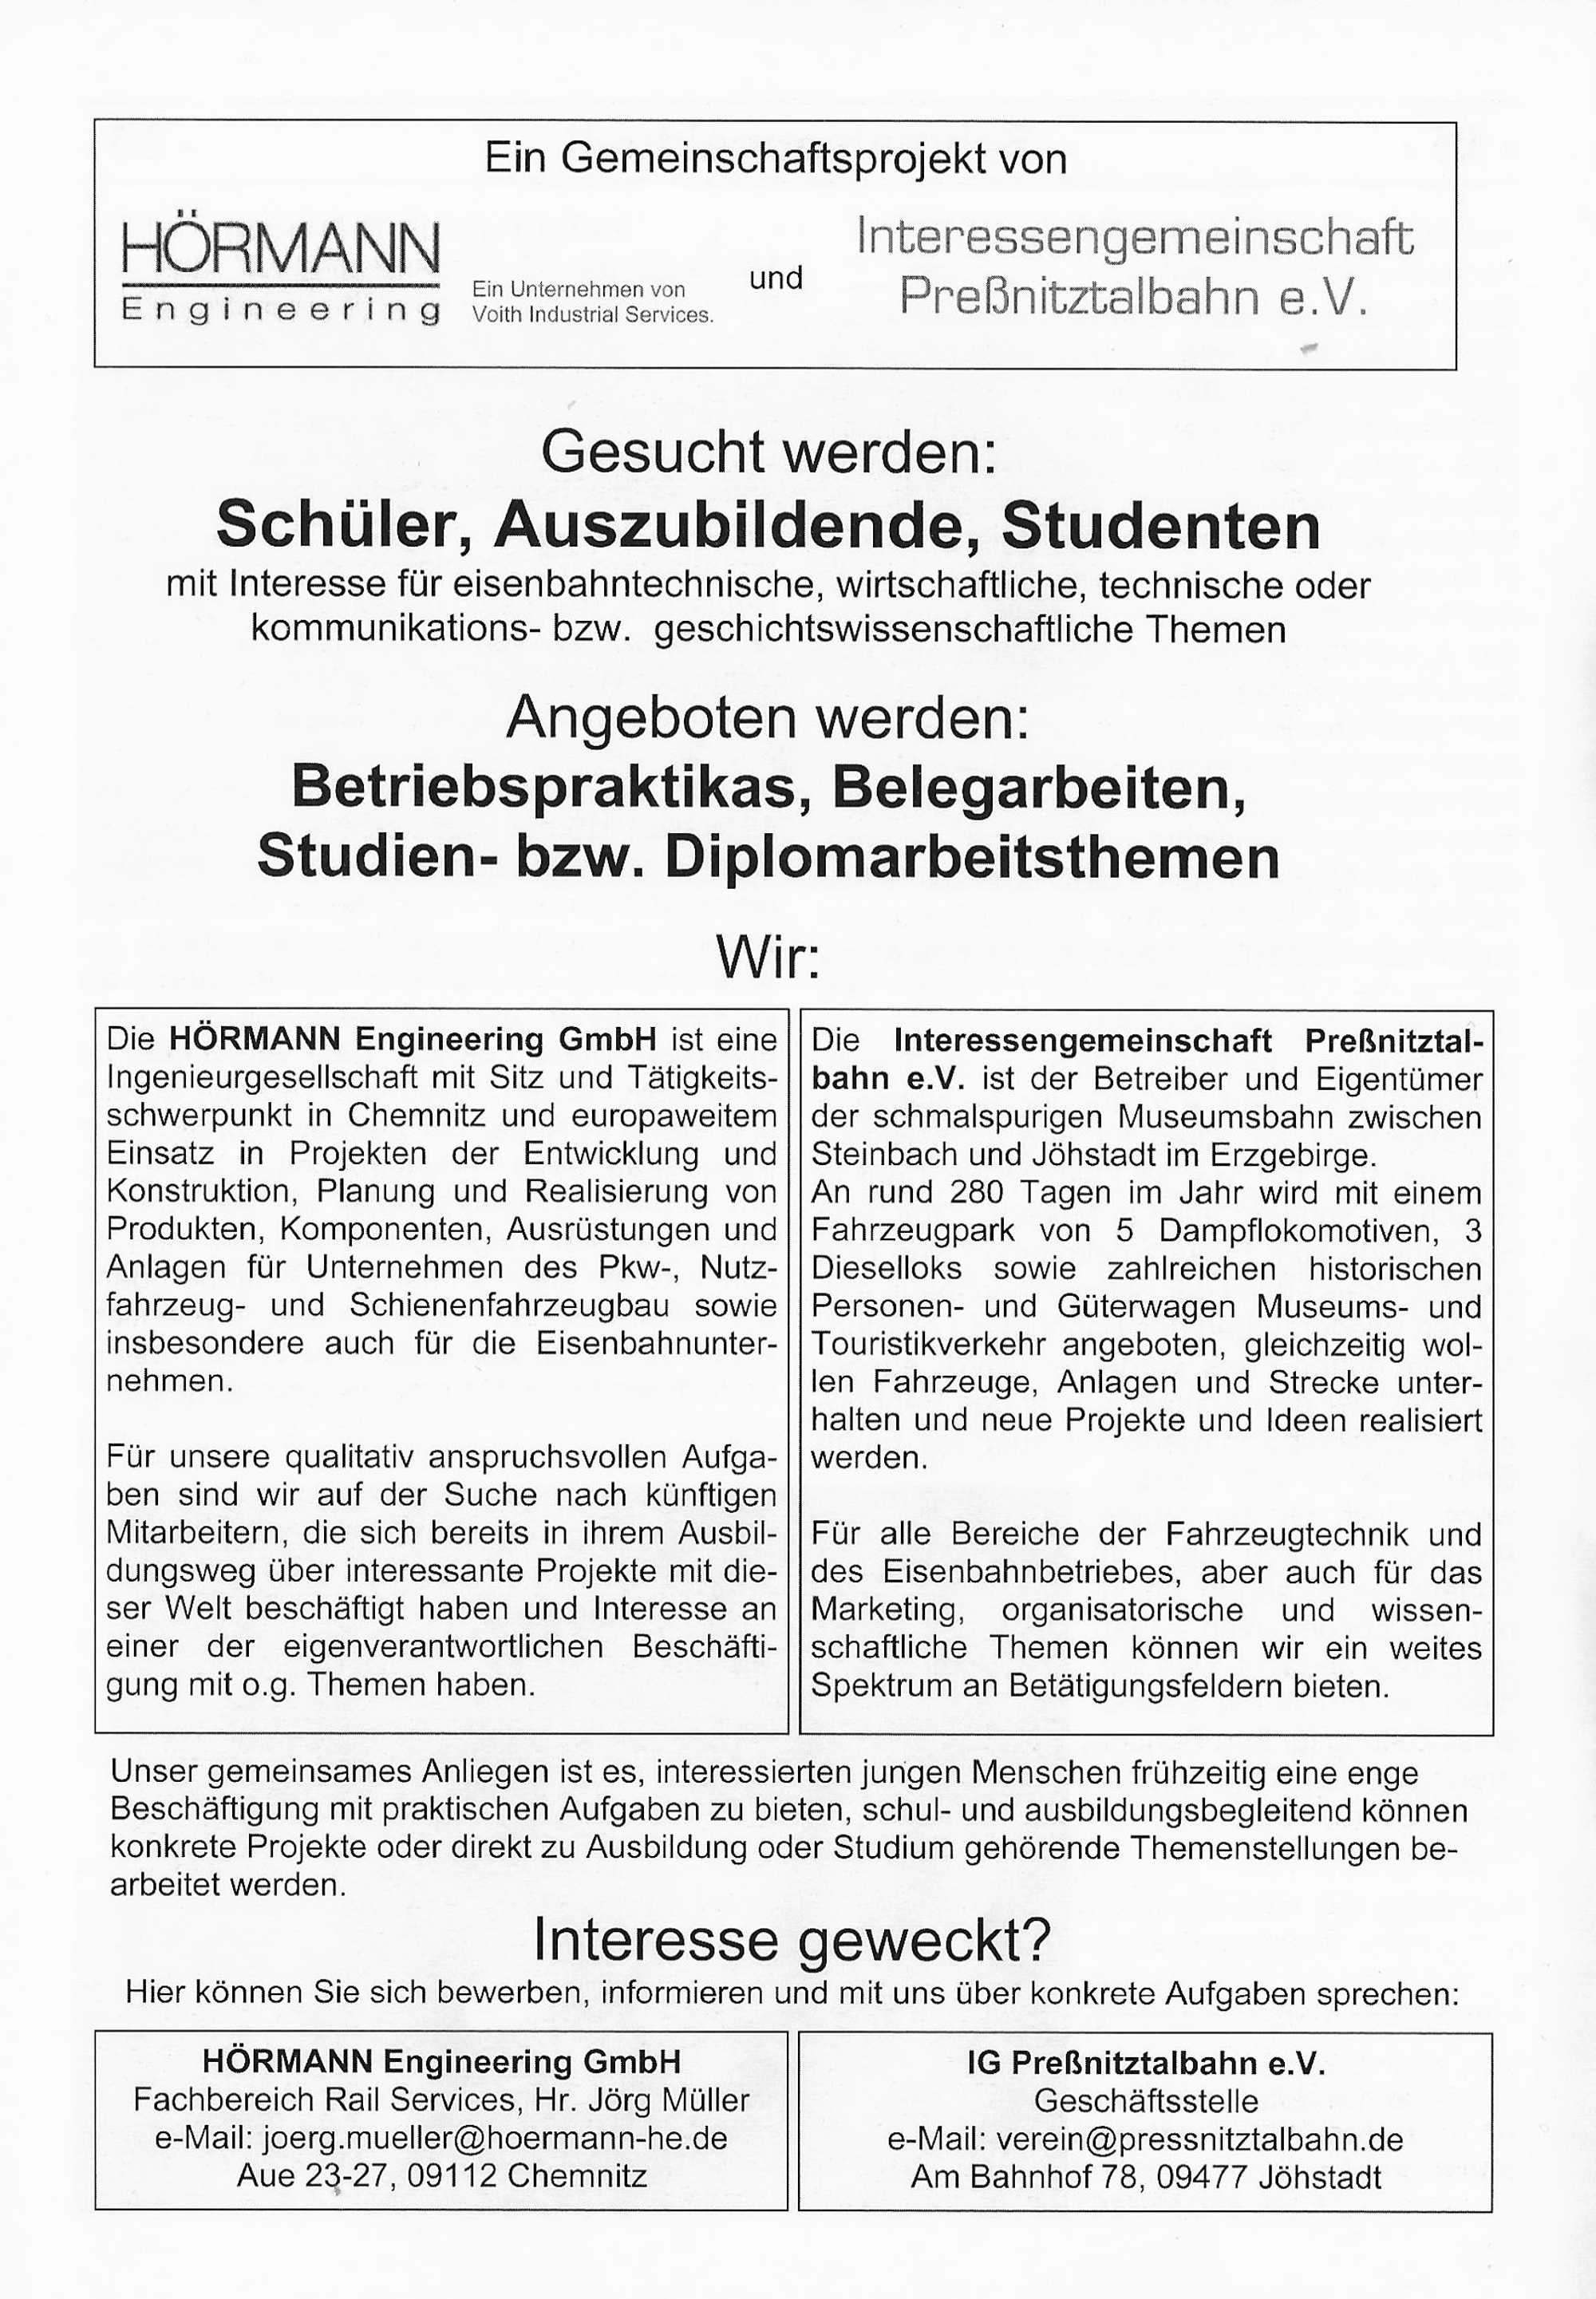 Angebot für Praktikas bzw. Beleg-/Studien- oder Diplomarbeiten in Zusammenarbeit mit der Preßnitztalbahn